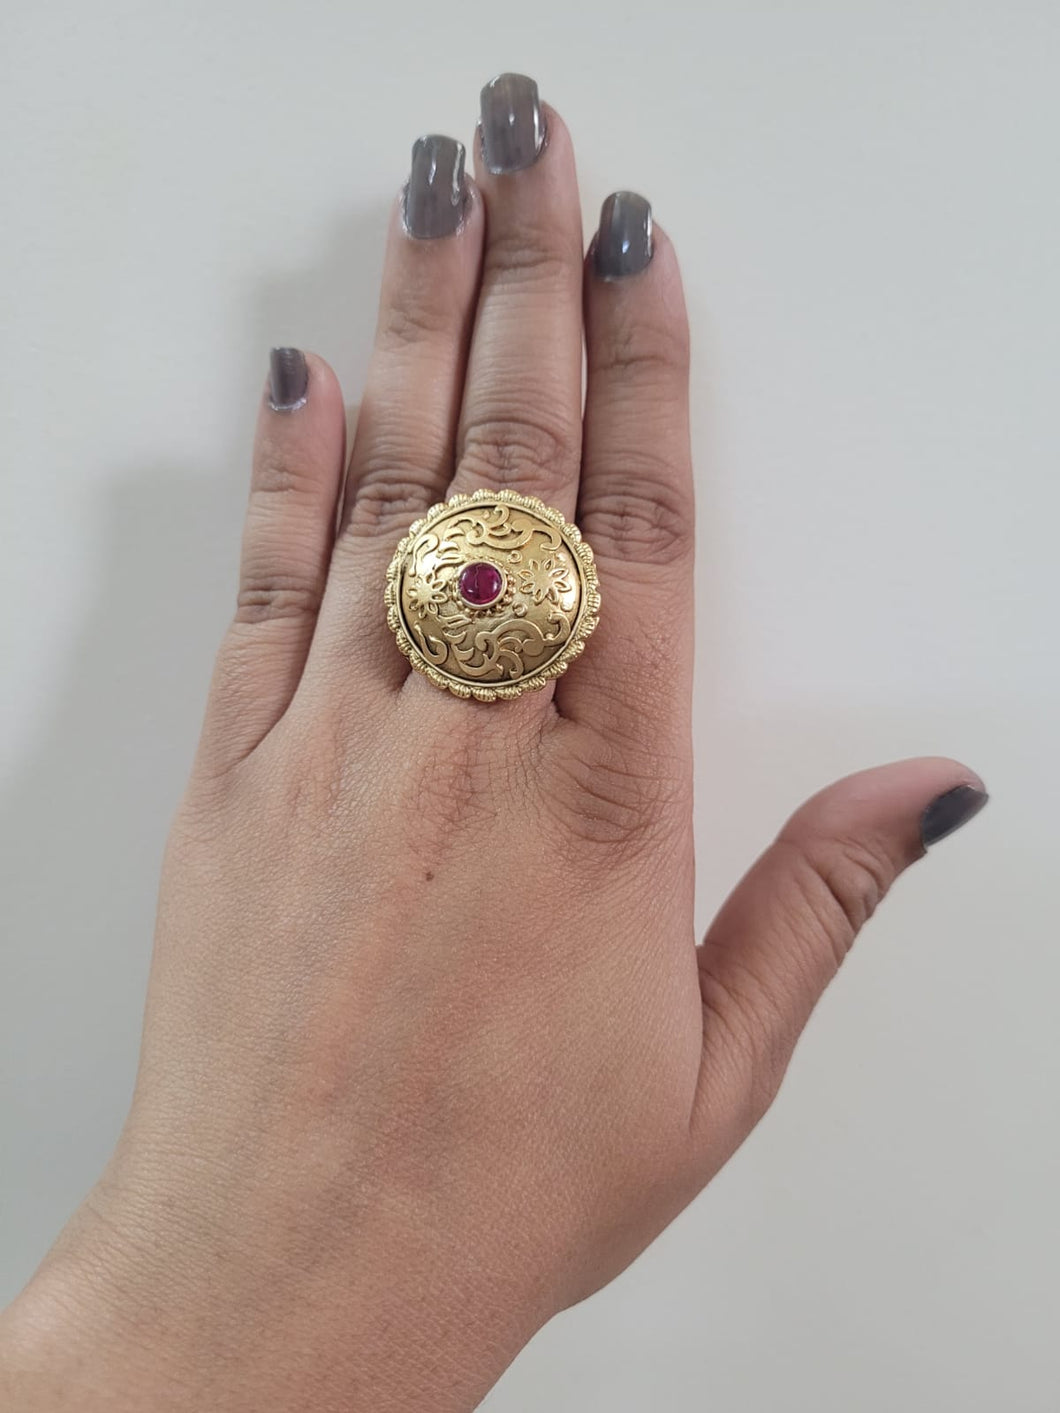 Pakistani gold rings | Wedding jewelry sets bridal jewellery, Bride jewelry  set, Gold ring designs